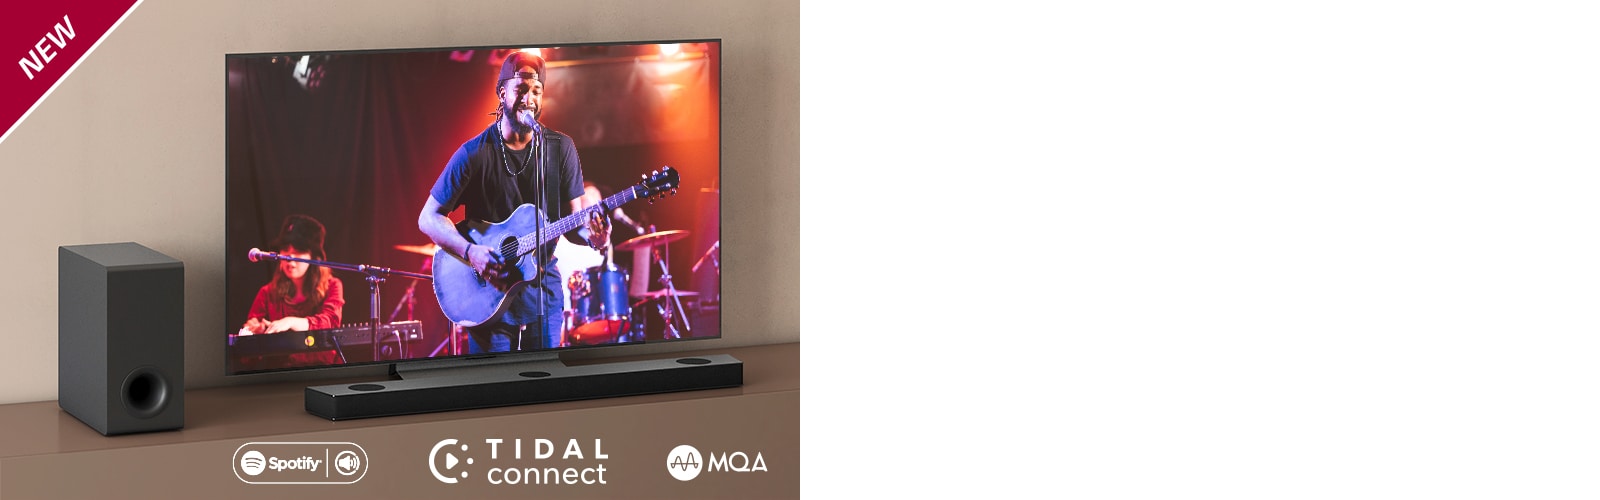 LG TV ir novietots uz brūna plaukta, LG Sound Bar S75Q ir novietota televizora priekšā. Zemo frekvenču pastiprinātājs ir novietots televizora kreisajā pusē. TV ekrānā redzama koncerta aina. Atzīme “Jaunums” ir redzama augšējā kreisajā stūrī.